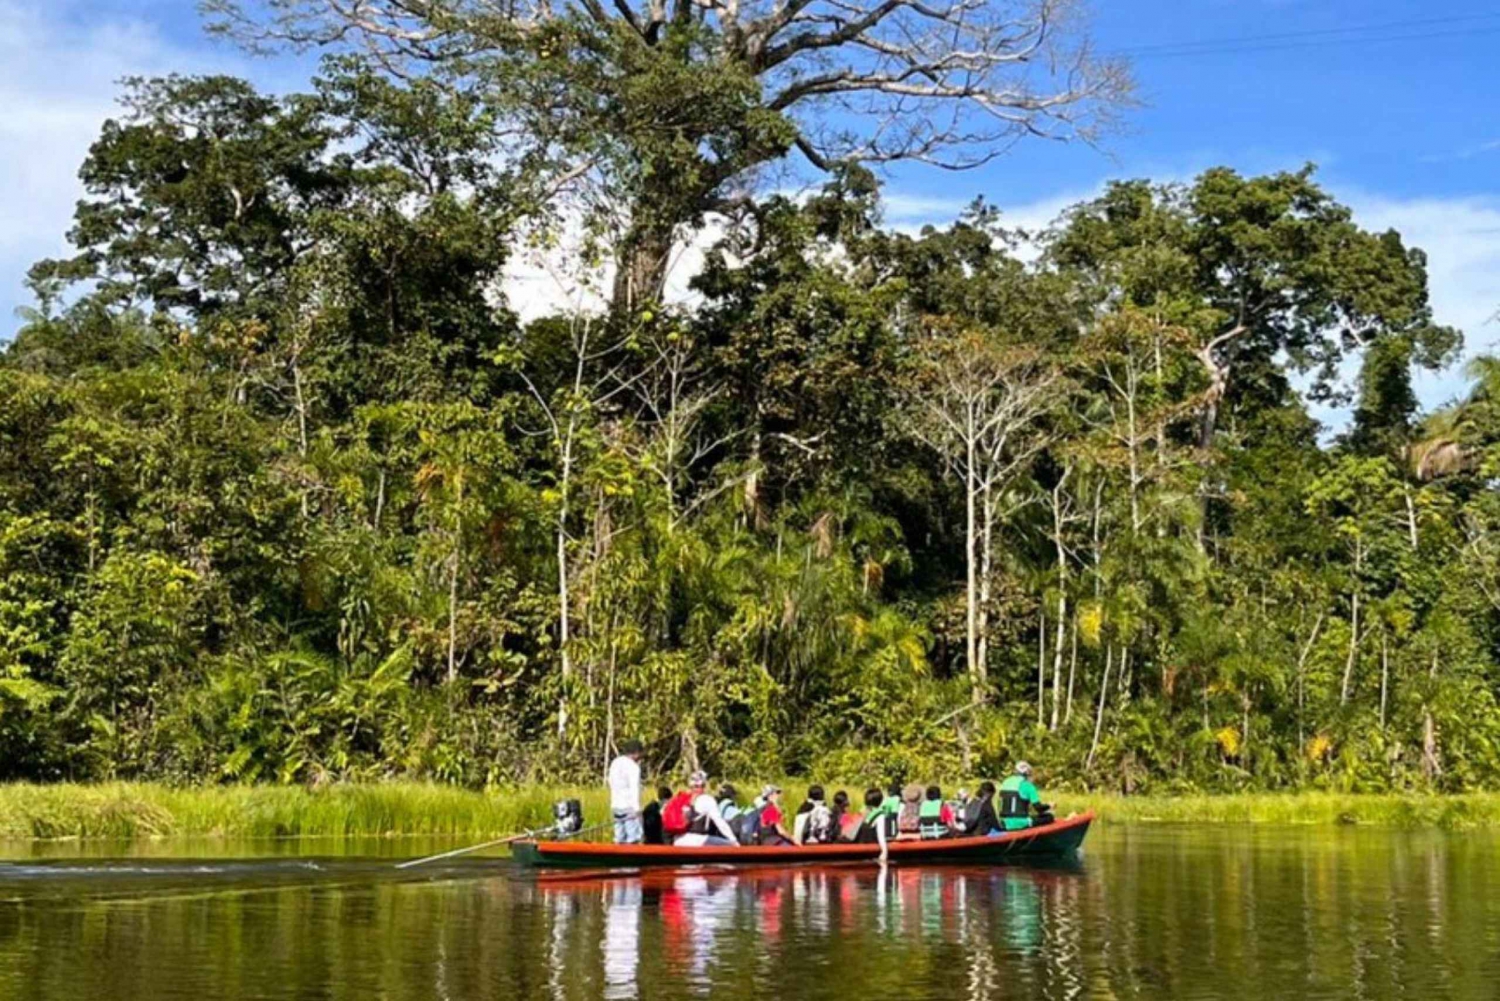 Plan Amazonas Camino del Huito 4 días y 3 noches